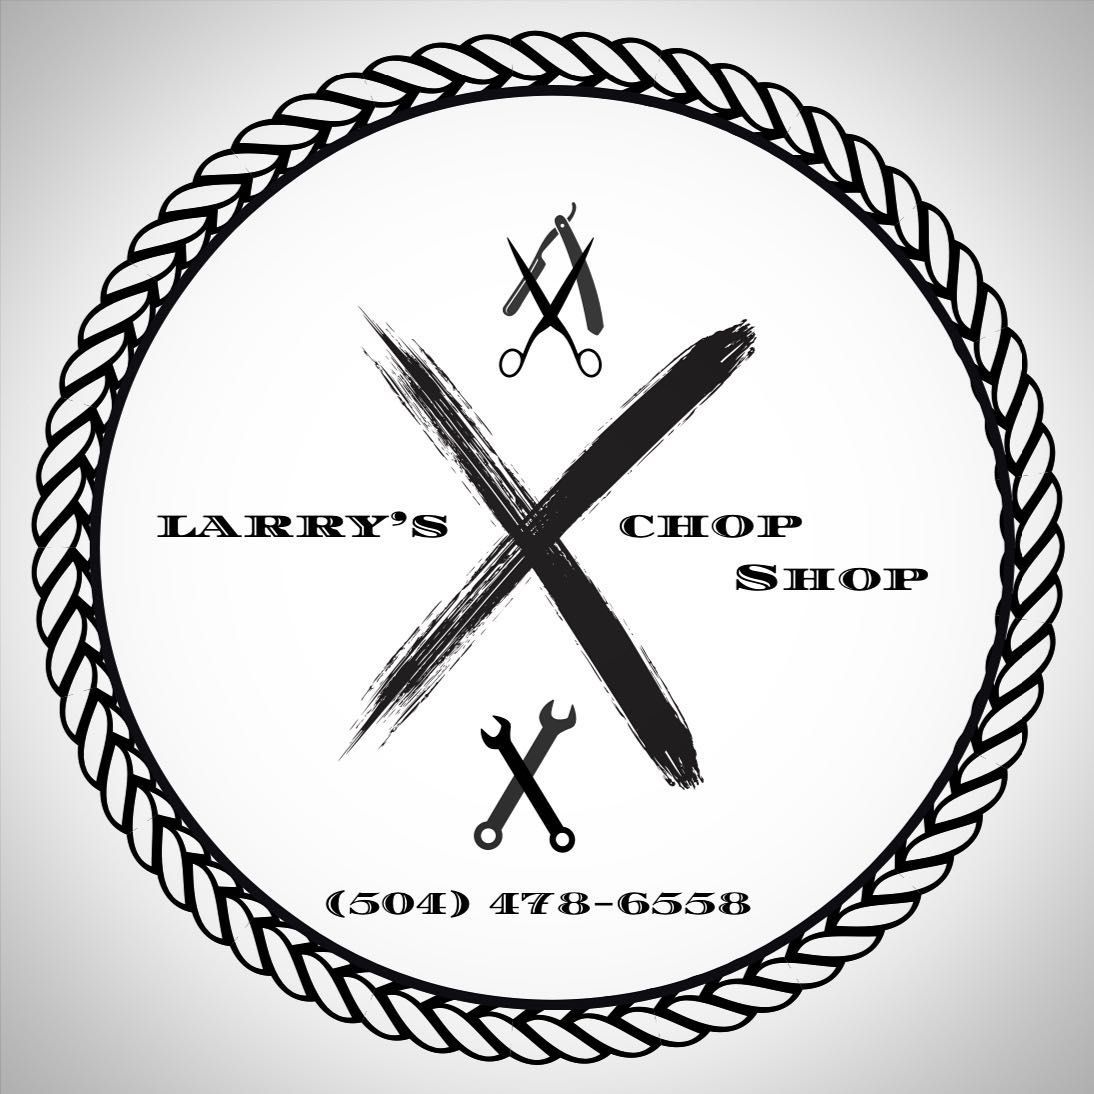 Larry’s Chop Shop, 1155 Eagle St, New Orleans, 70118